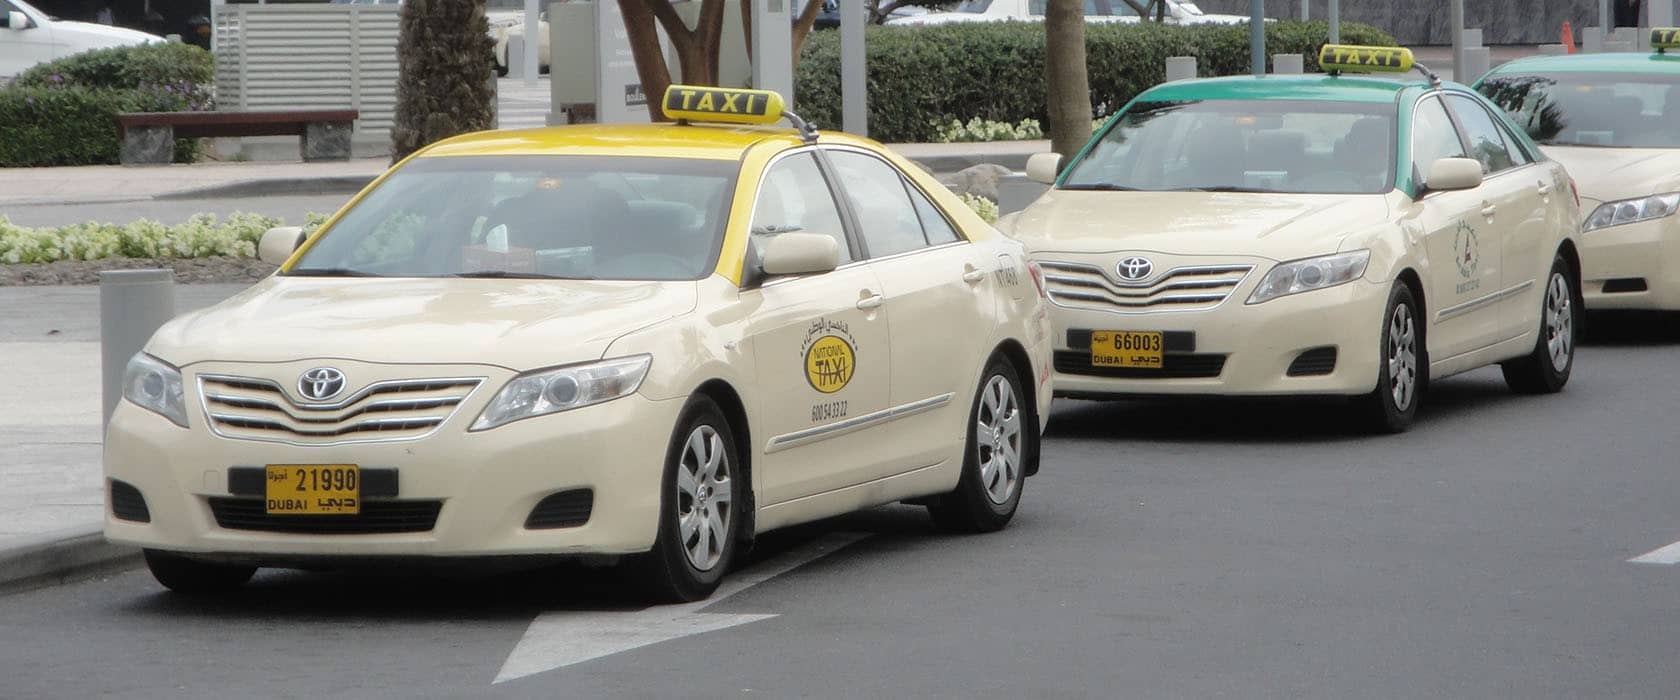 راهنمای استفاده از تاکسی در دبی 